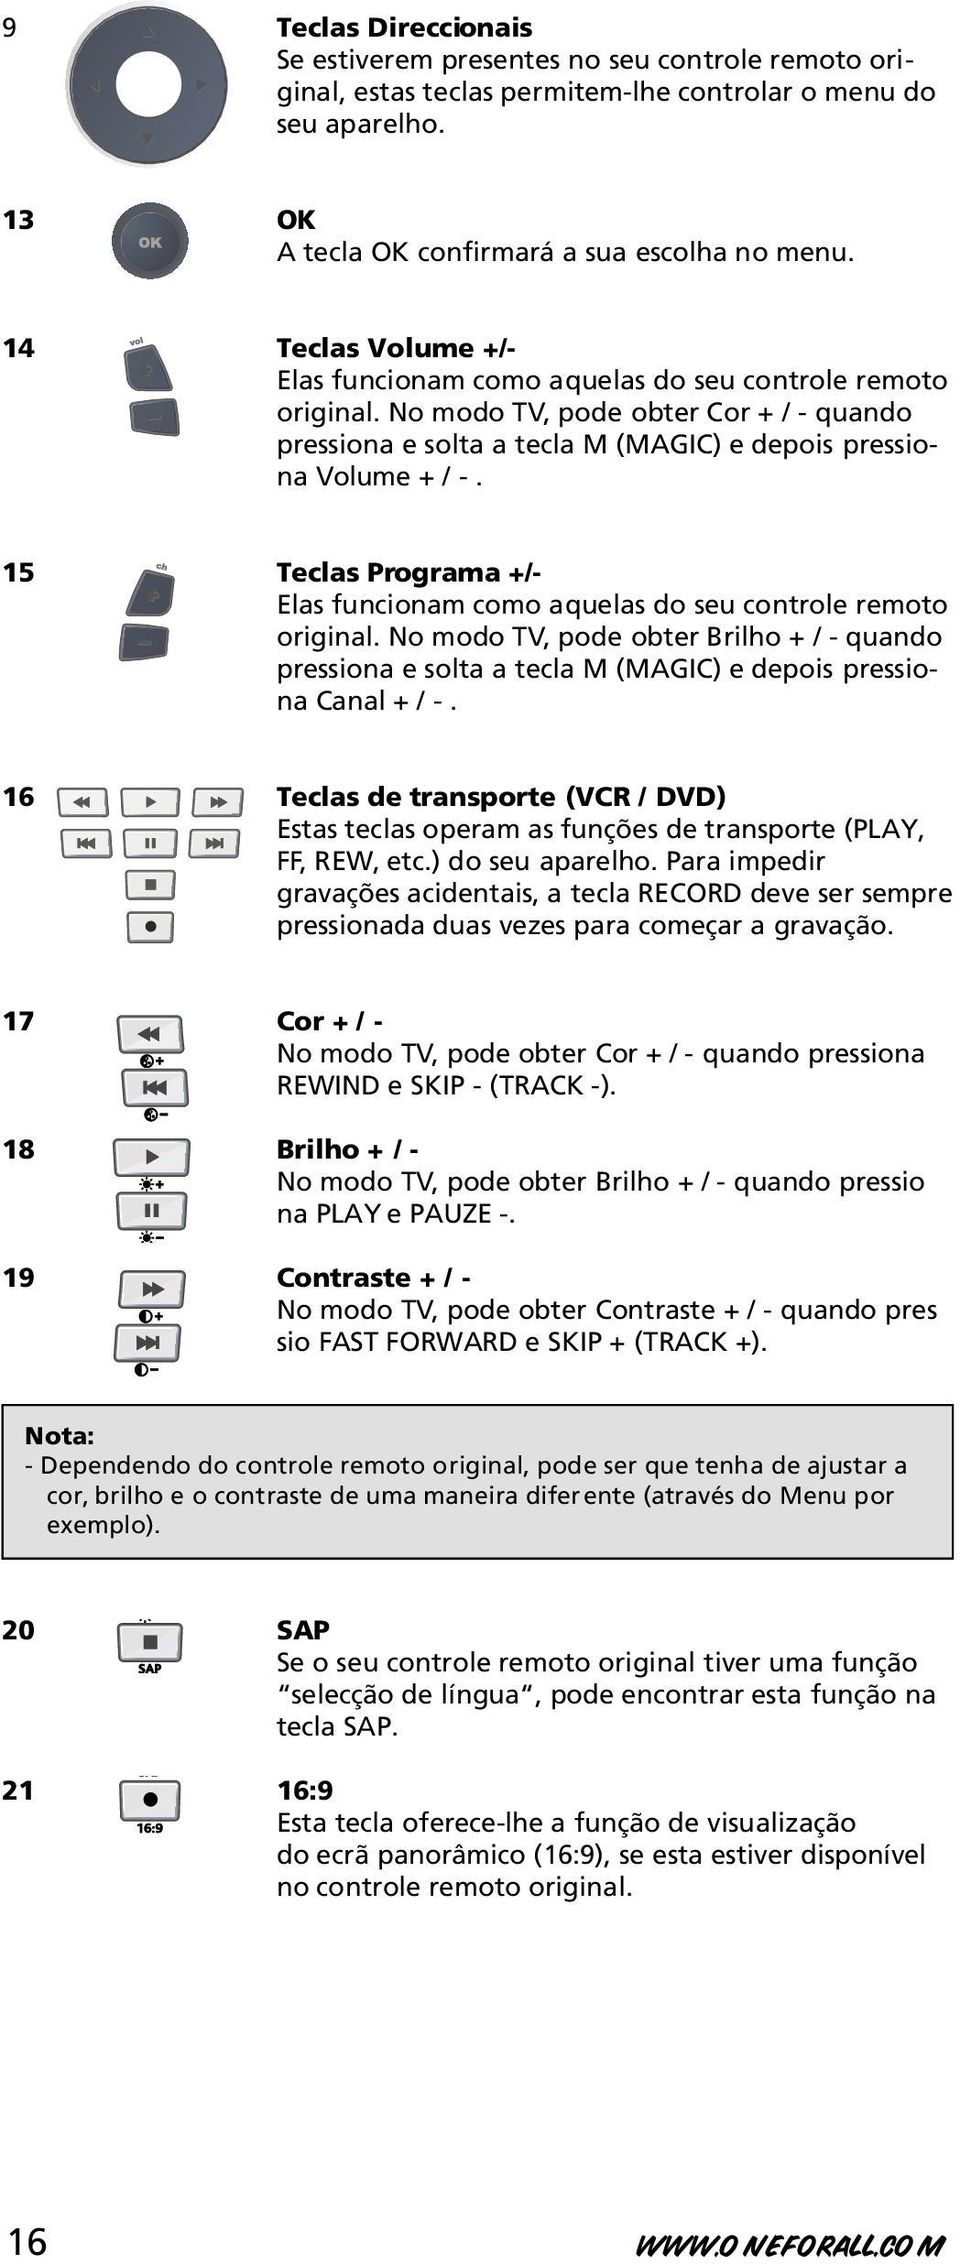 15 Teclas Programa +/- Elas funcionam como aquelas do seu controle remoto original. No modo TV, pode obter Brilho + / - quando pressiona e solta a tecla M (MAGIC) e depois pressiona Canal + / -.